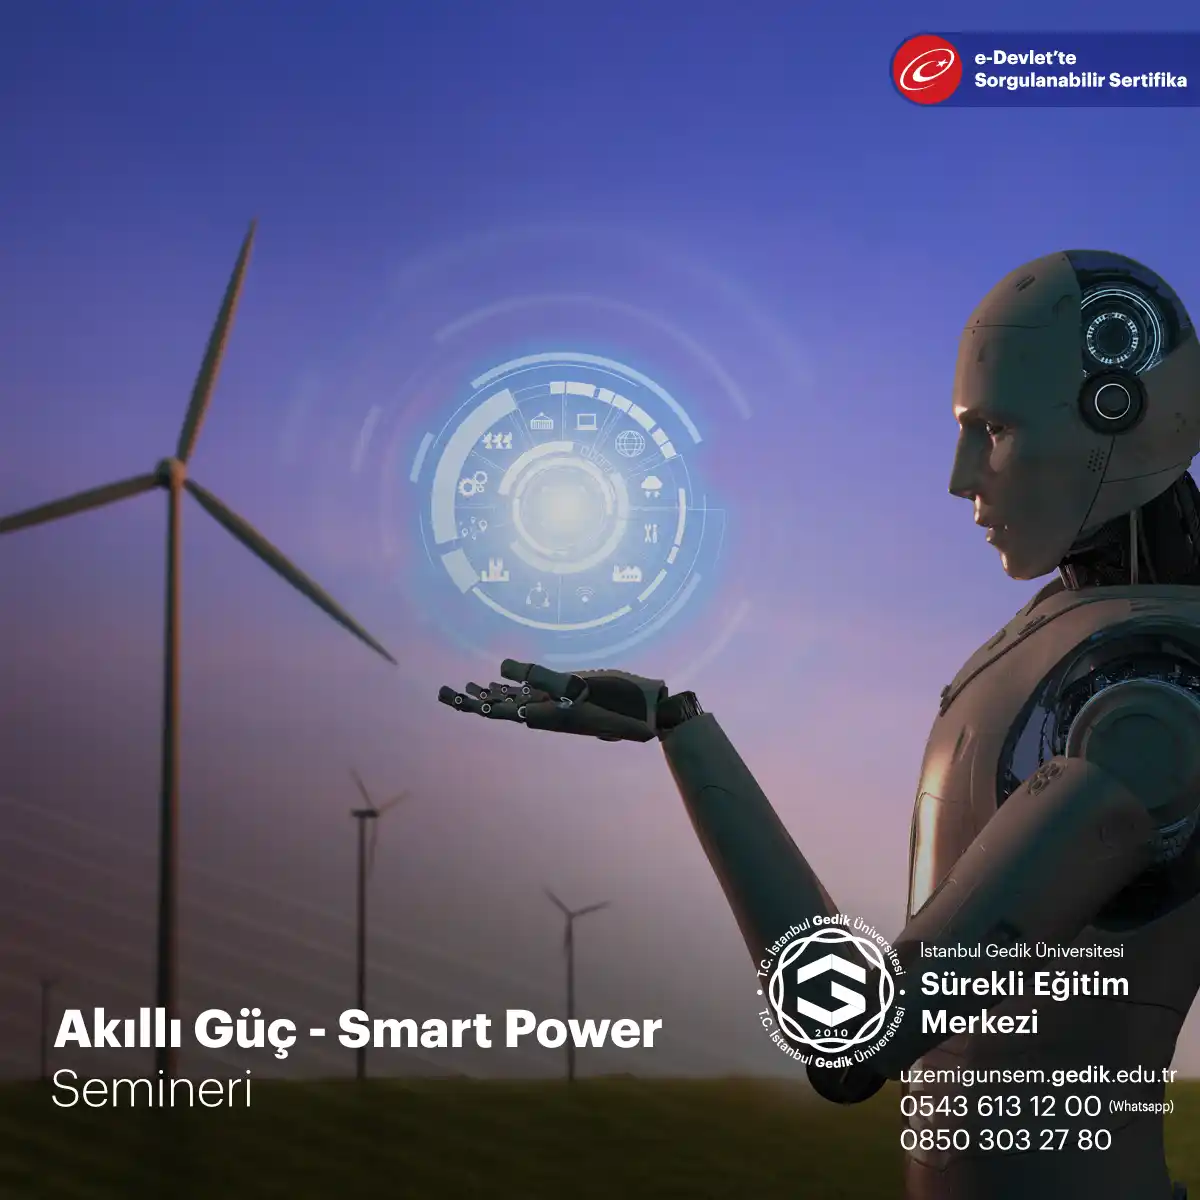 Akıllı Güç - Smart Power Semineri, modern dünyada güç dengelerinin değişimi ve uluslararası ilişkilerin dinamikleri üzerine odaklanan bir eğitim programıdır.